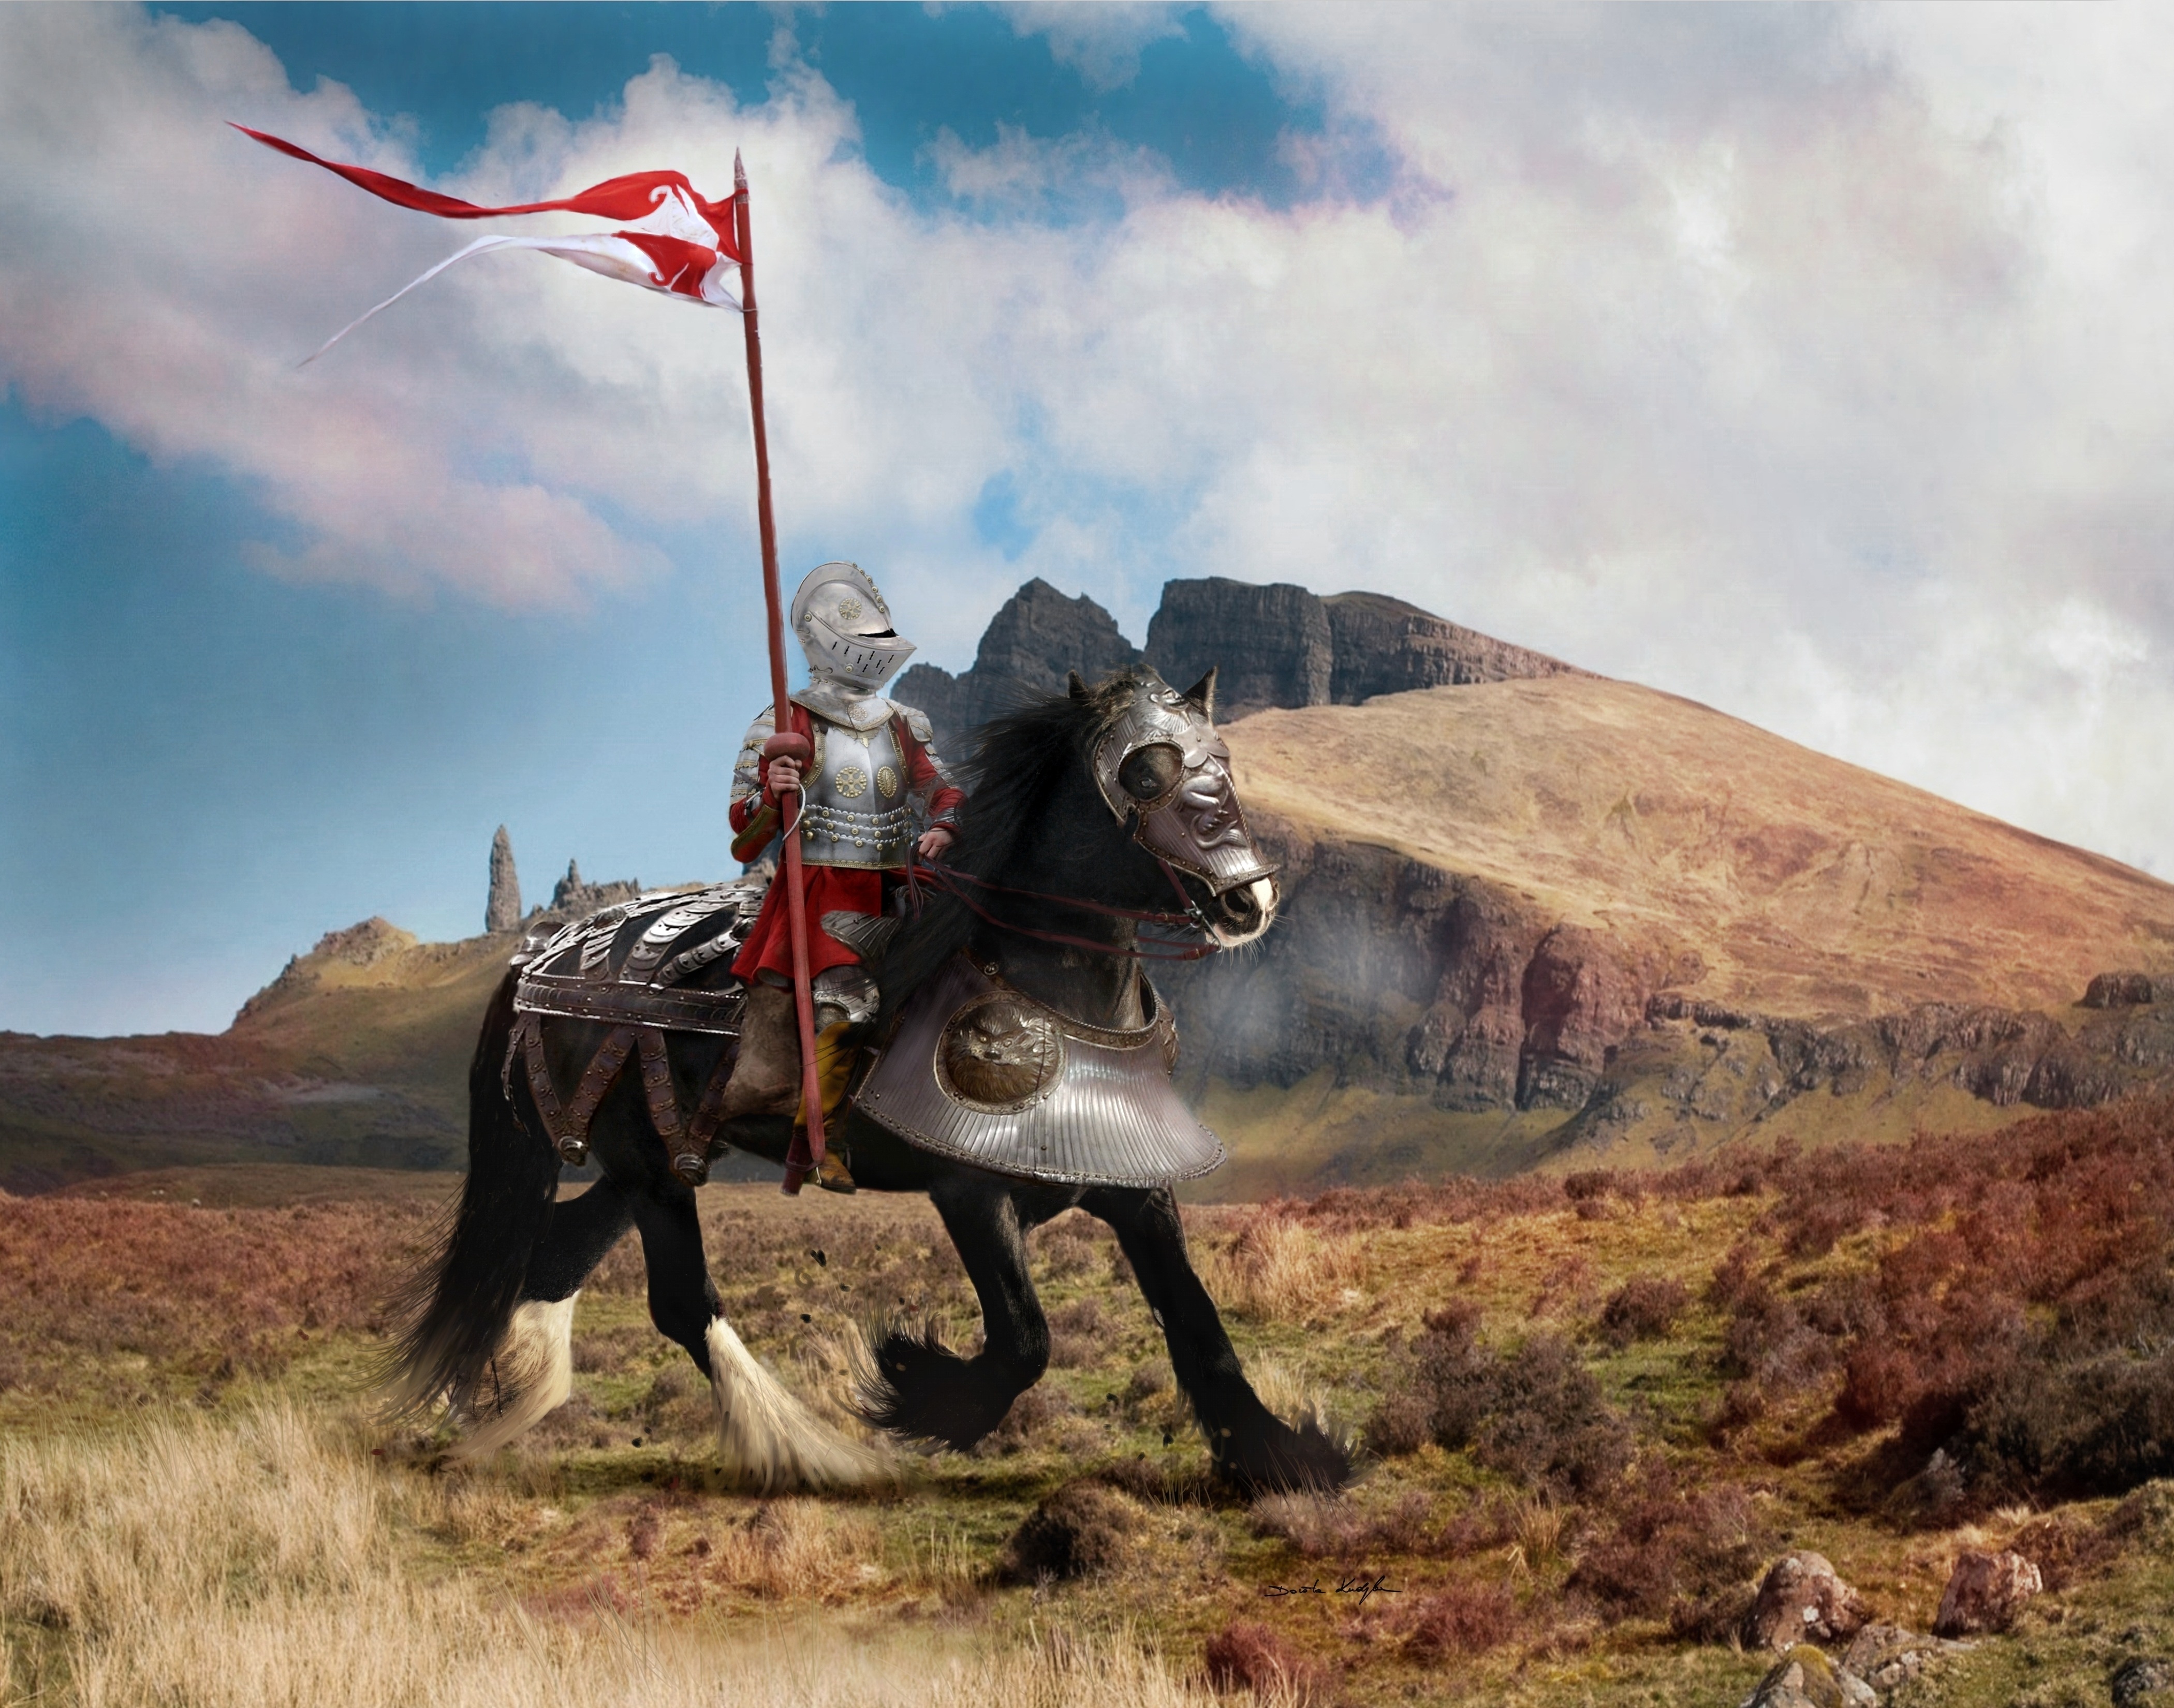 Knight on His Horse by Dorota Kudyba